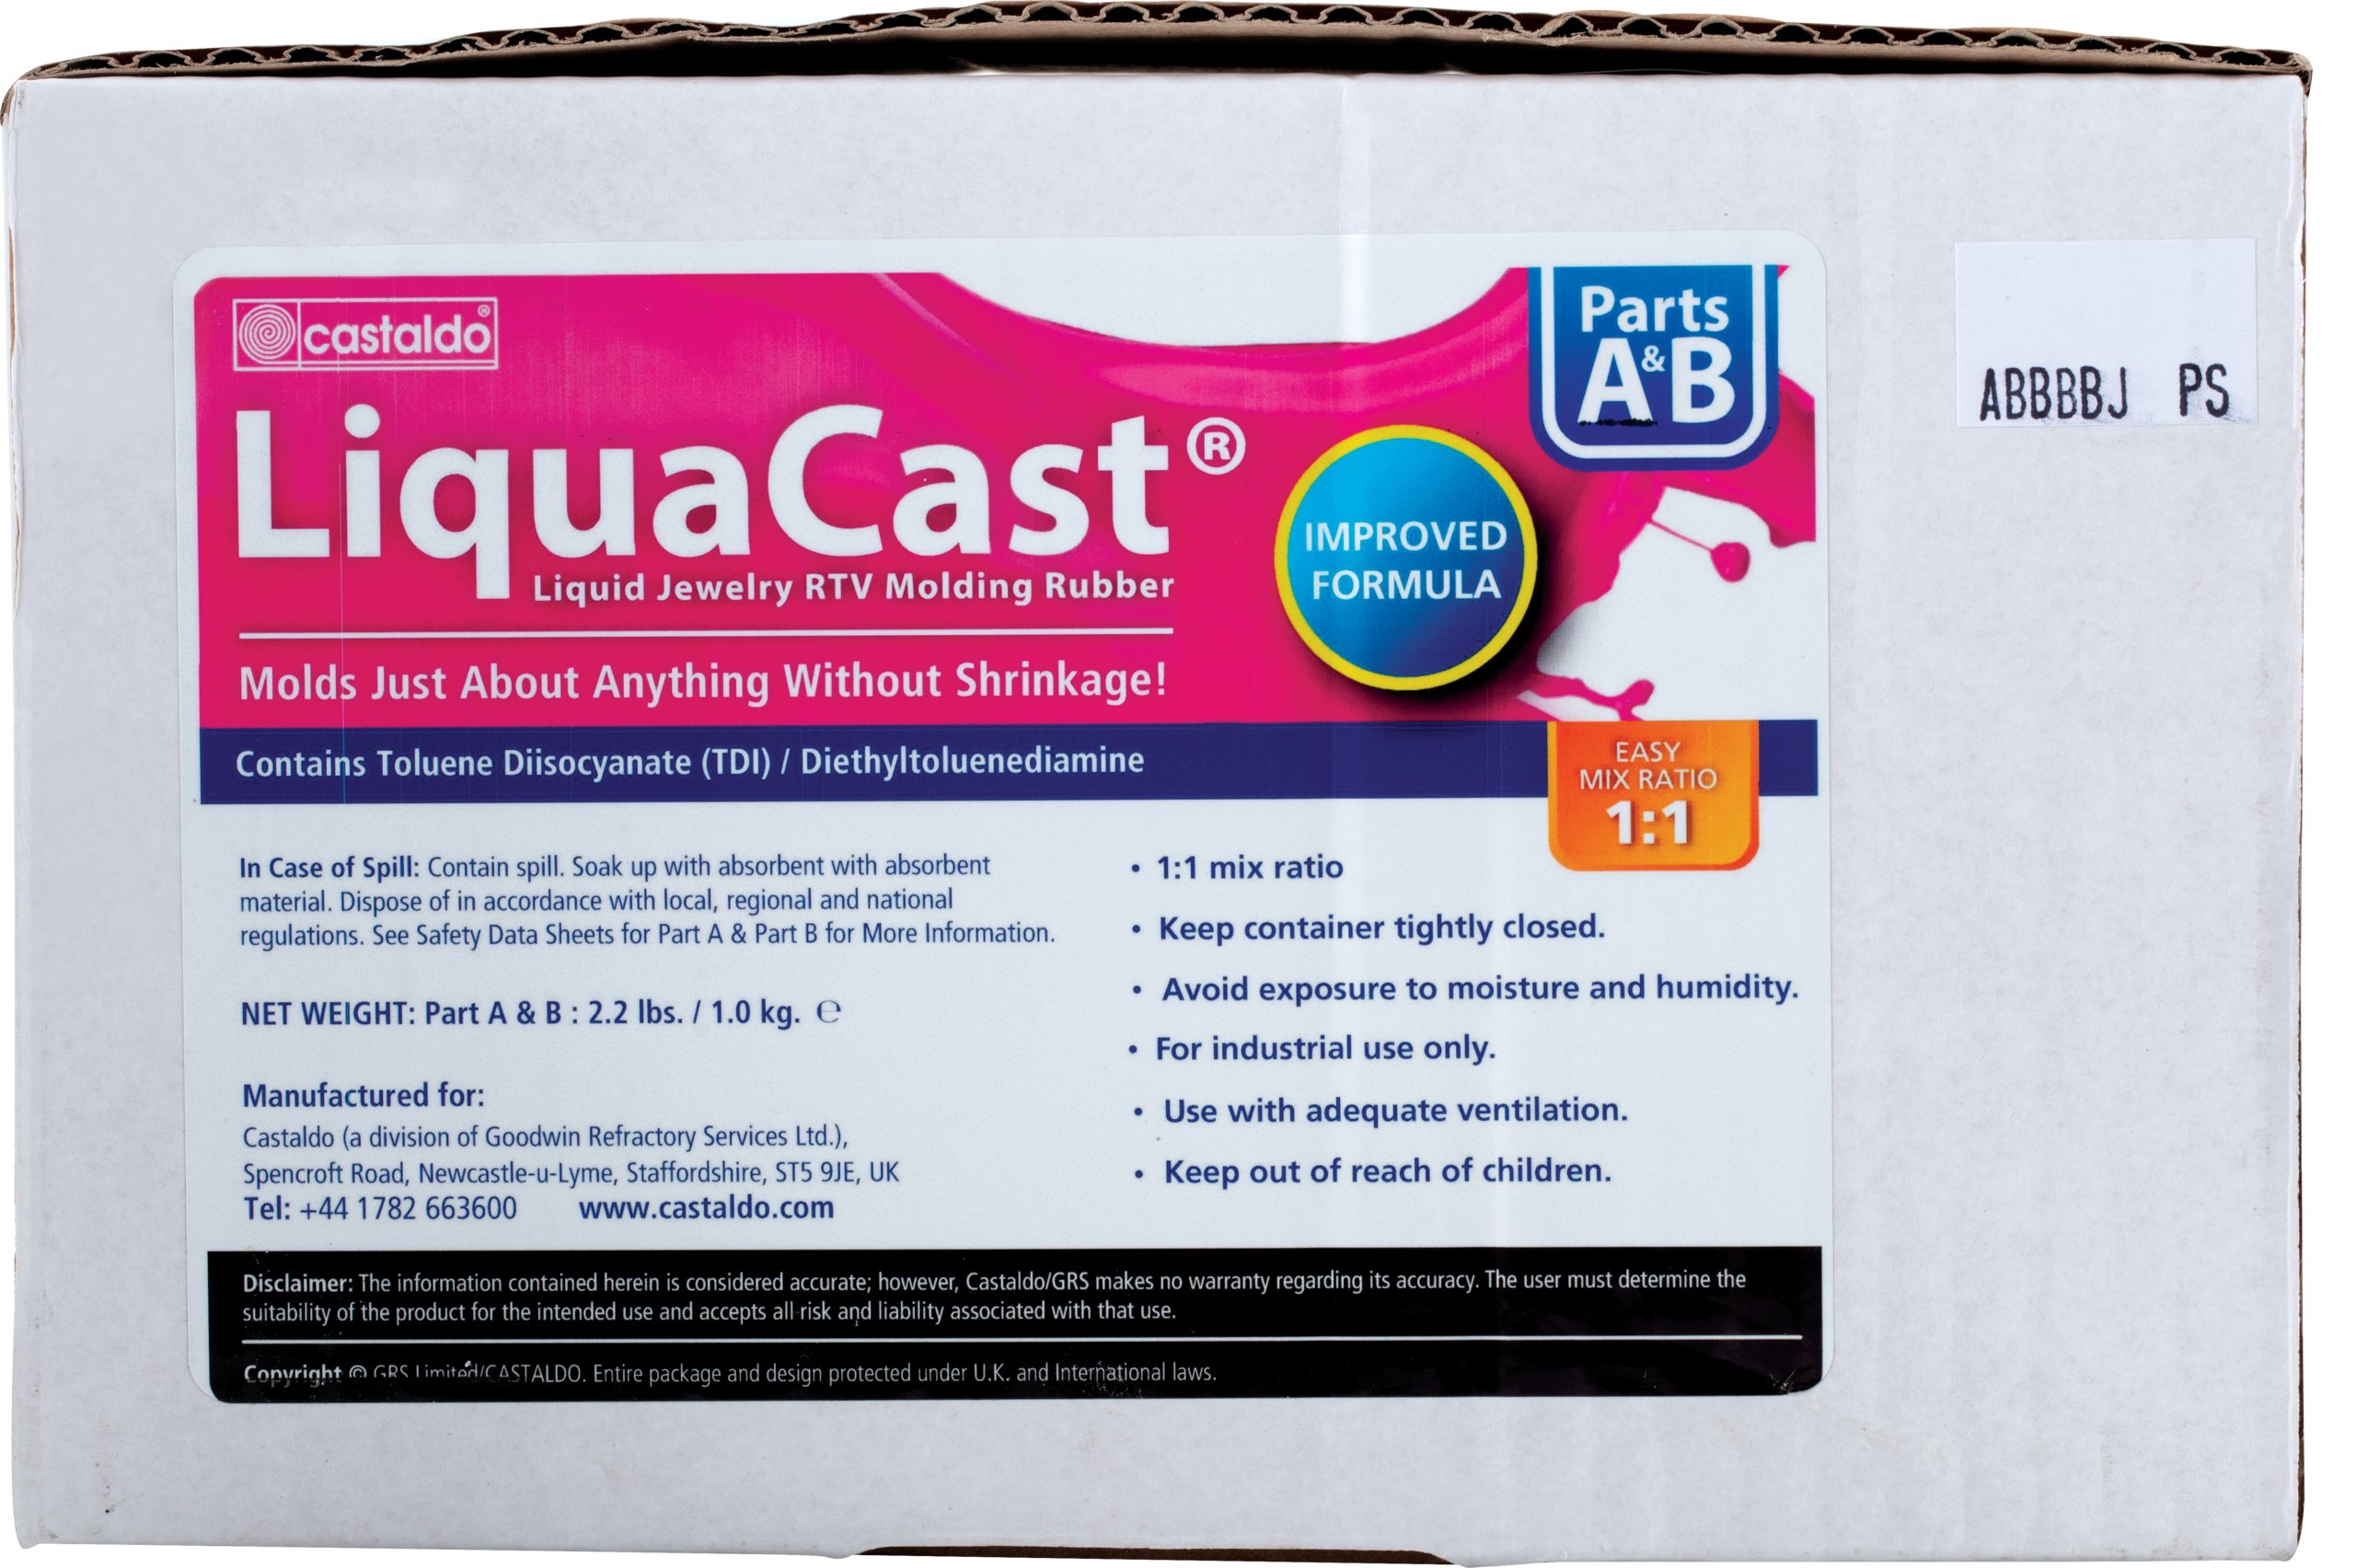 Caoutchouc liquide LiquaCast pour la création de moules, Castaldo 